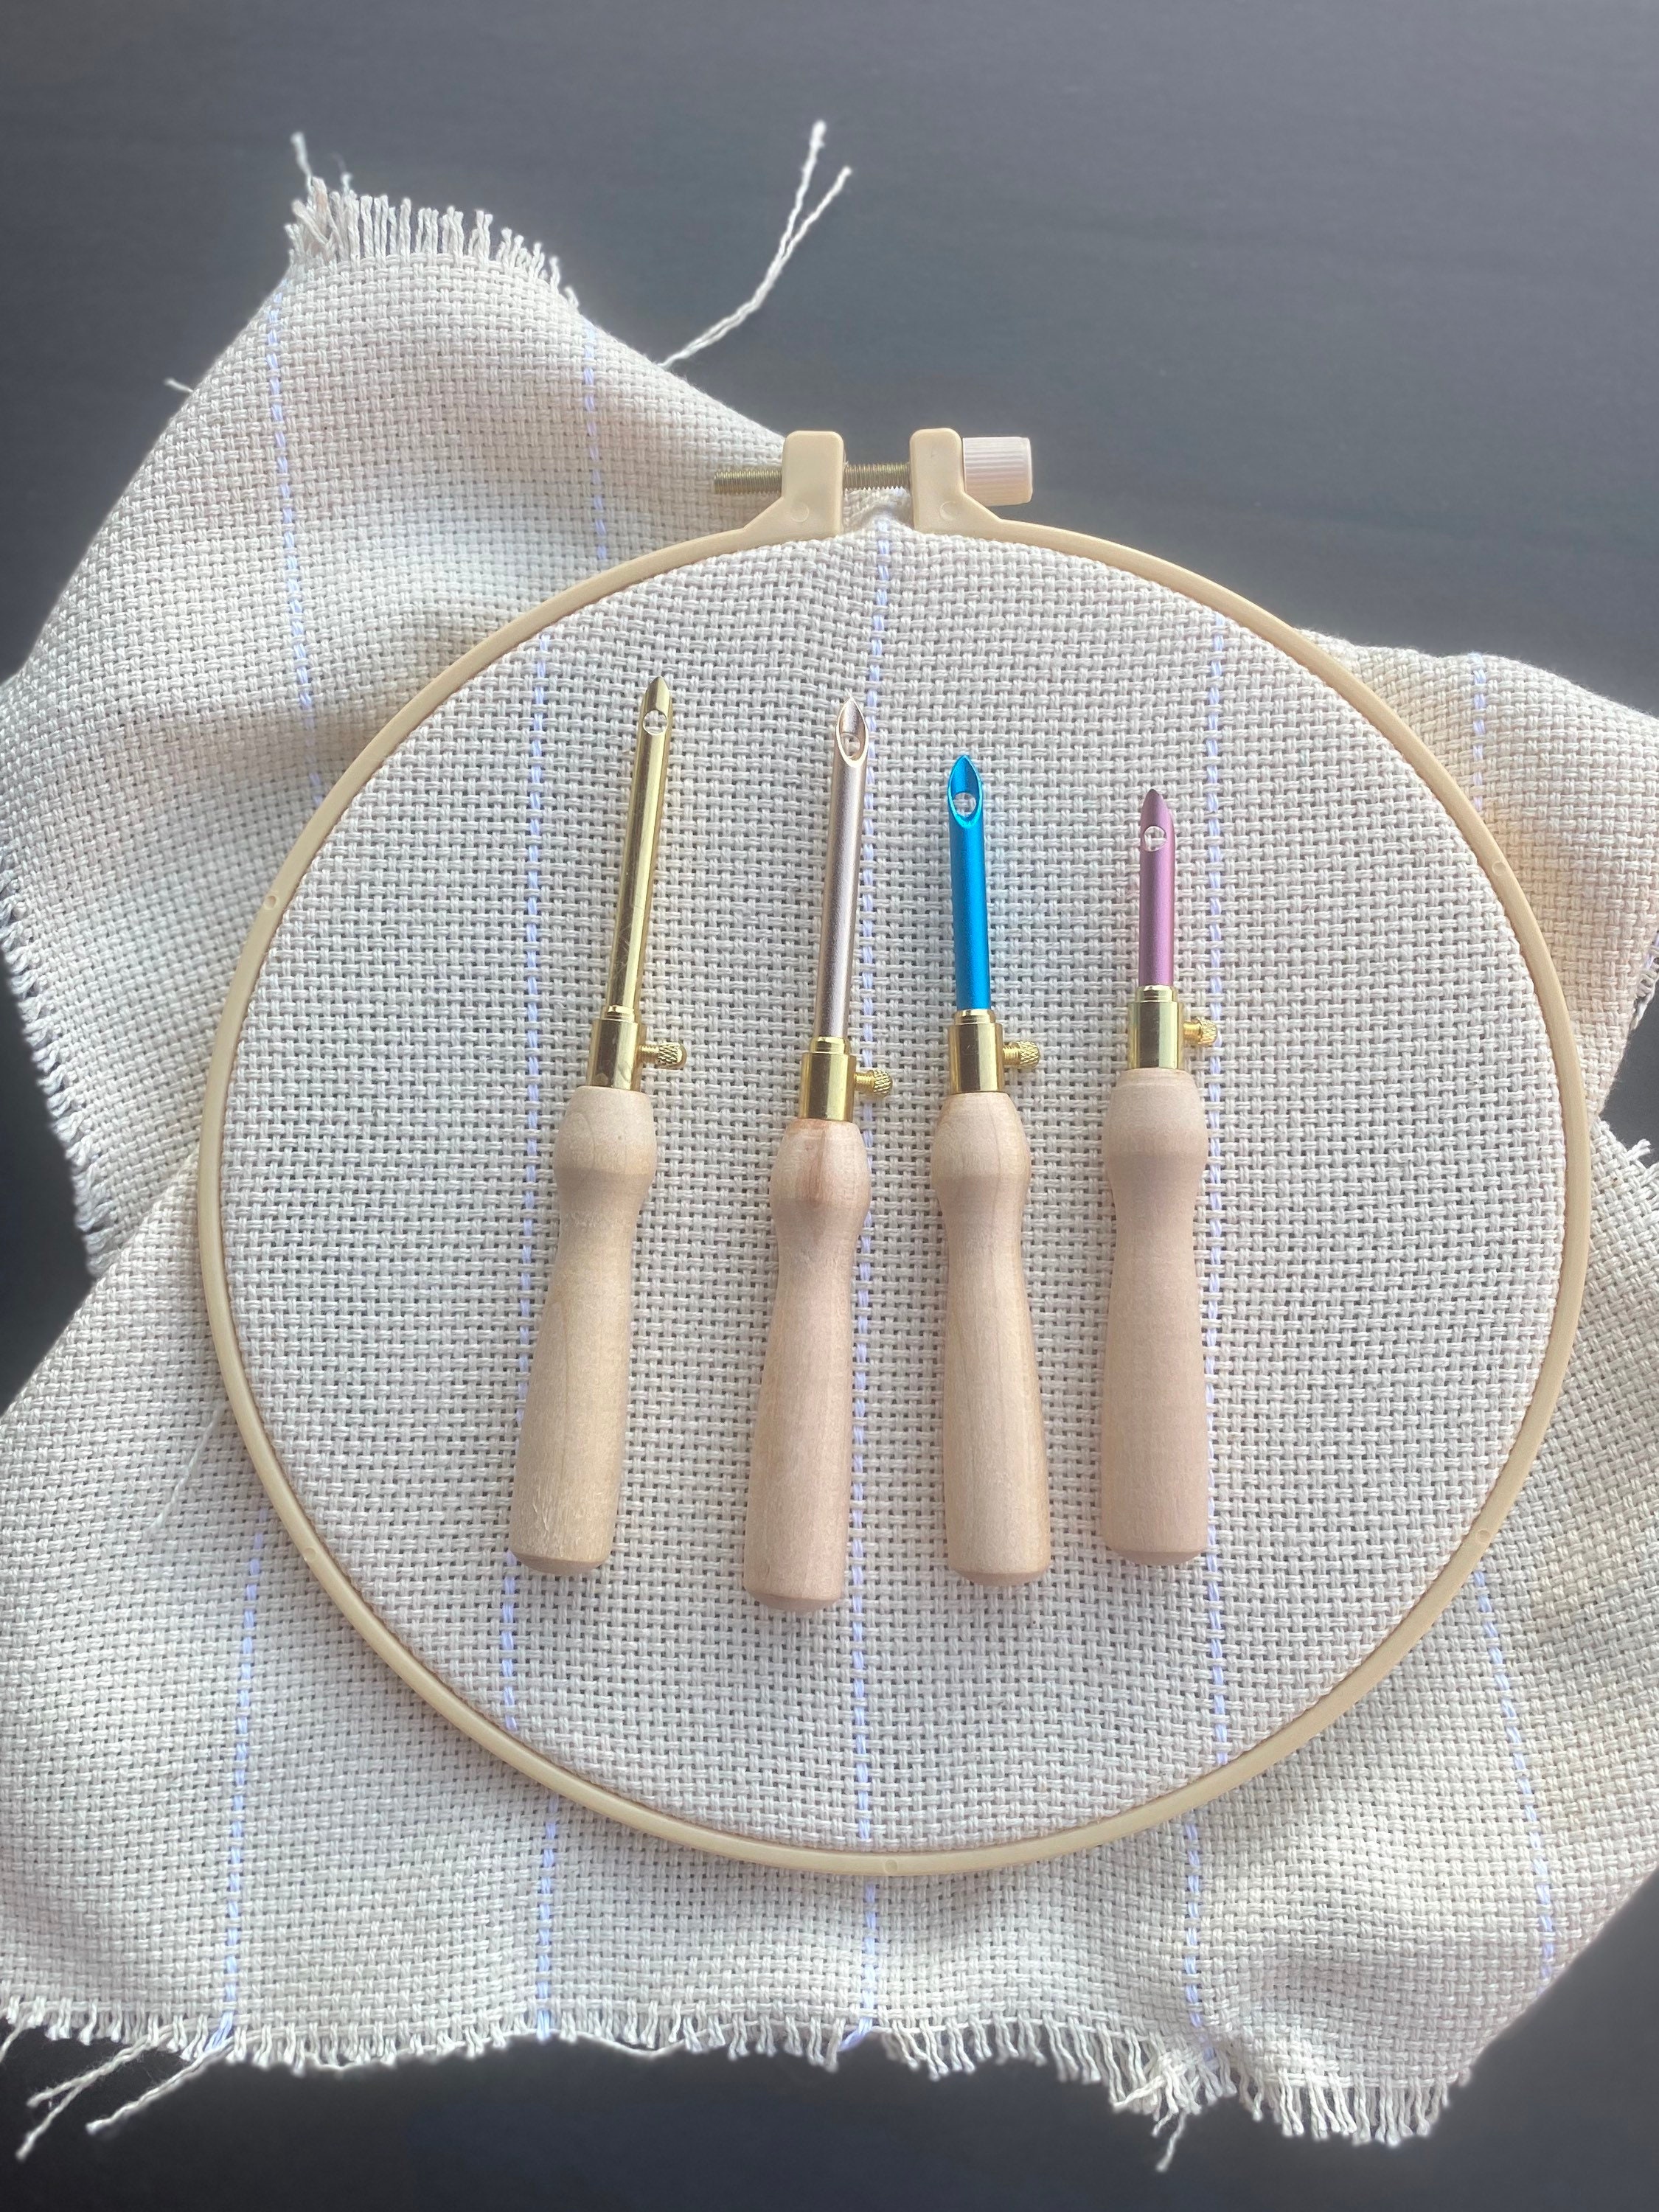 Punch Needle Embroidery Pen Adjustable Rug Yarn Punch Needle - Temu